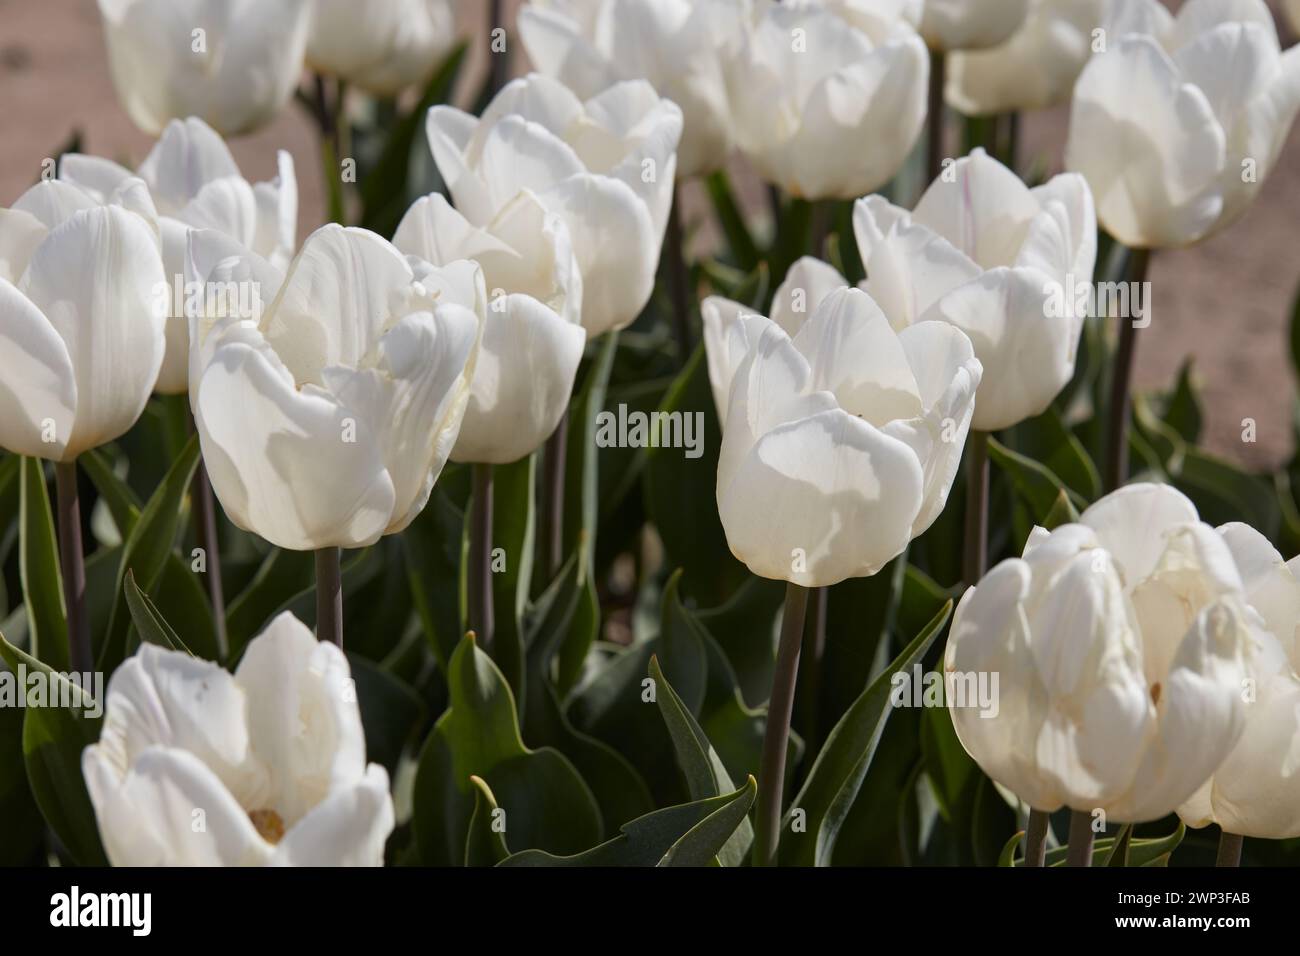 Tulip White Price flores en la luz del sol de primavera Foto de stock